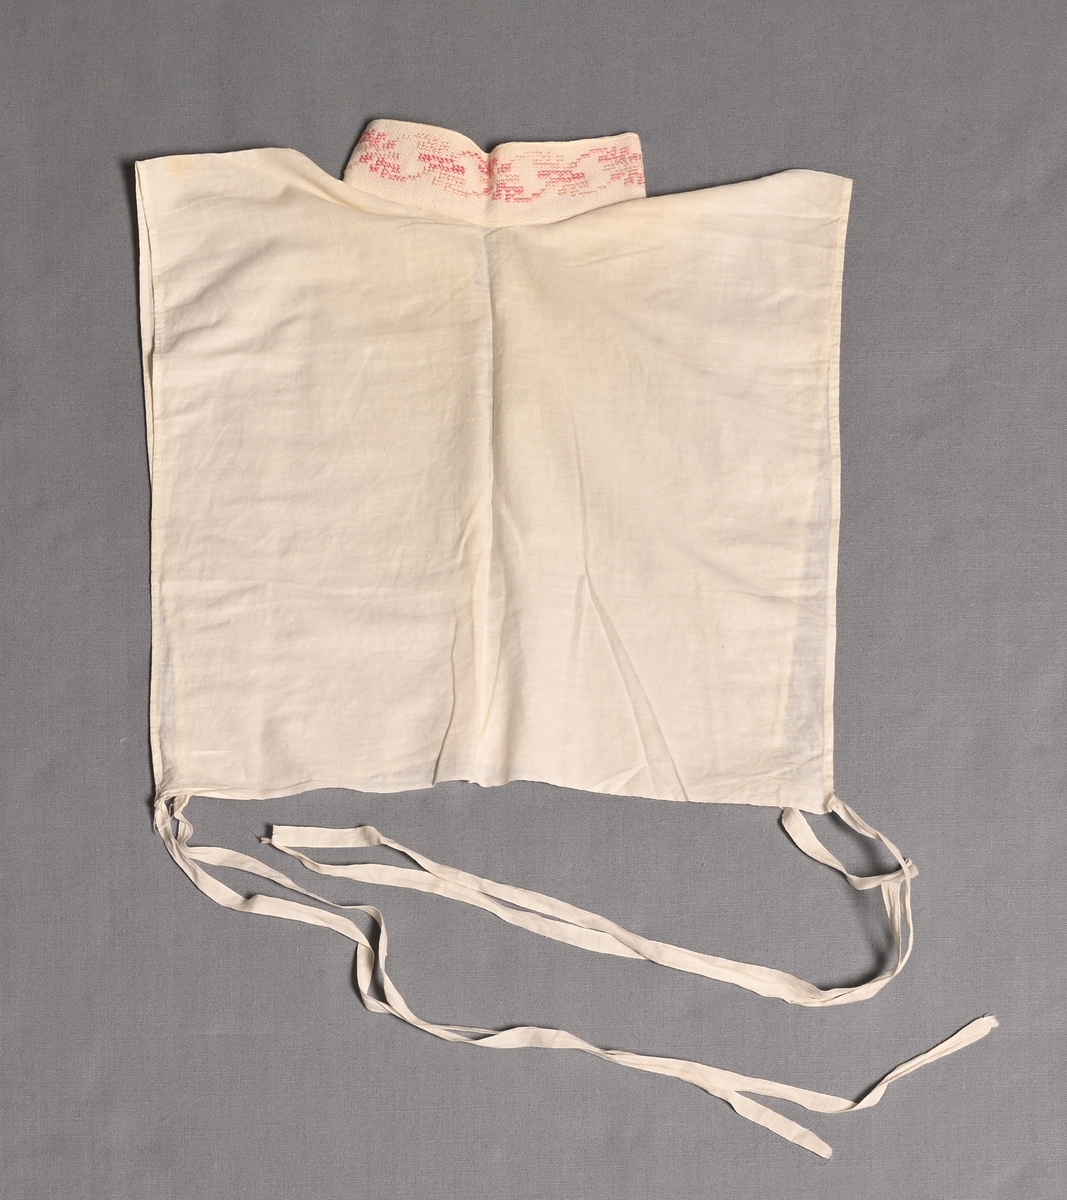 Isättning till grönländsk festdräkt för kvinnor.
Löst skjortbröst av vitt bomullstyg med liten ståkrage med rosa-blekrosa korsstygnsbroderi på aidaväv. Knyts med bomullsband i båda sidorna.